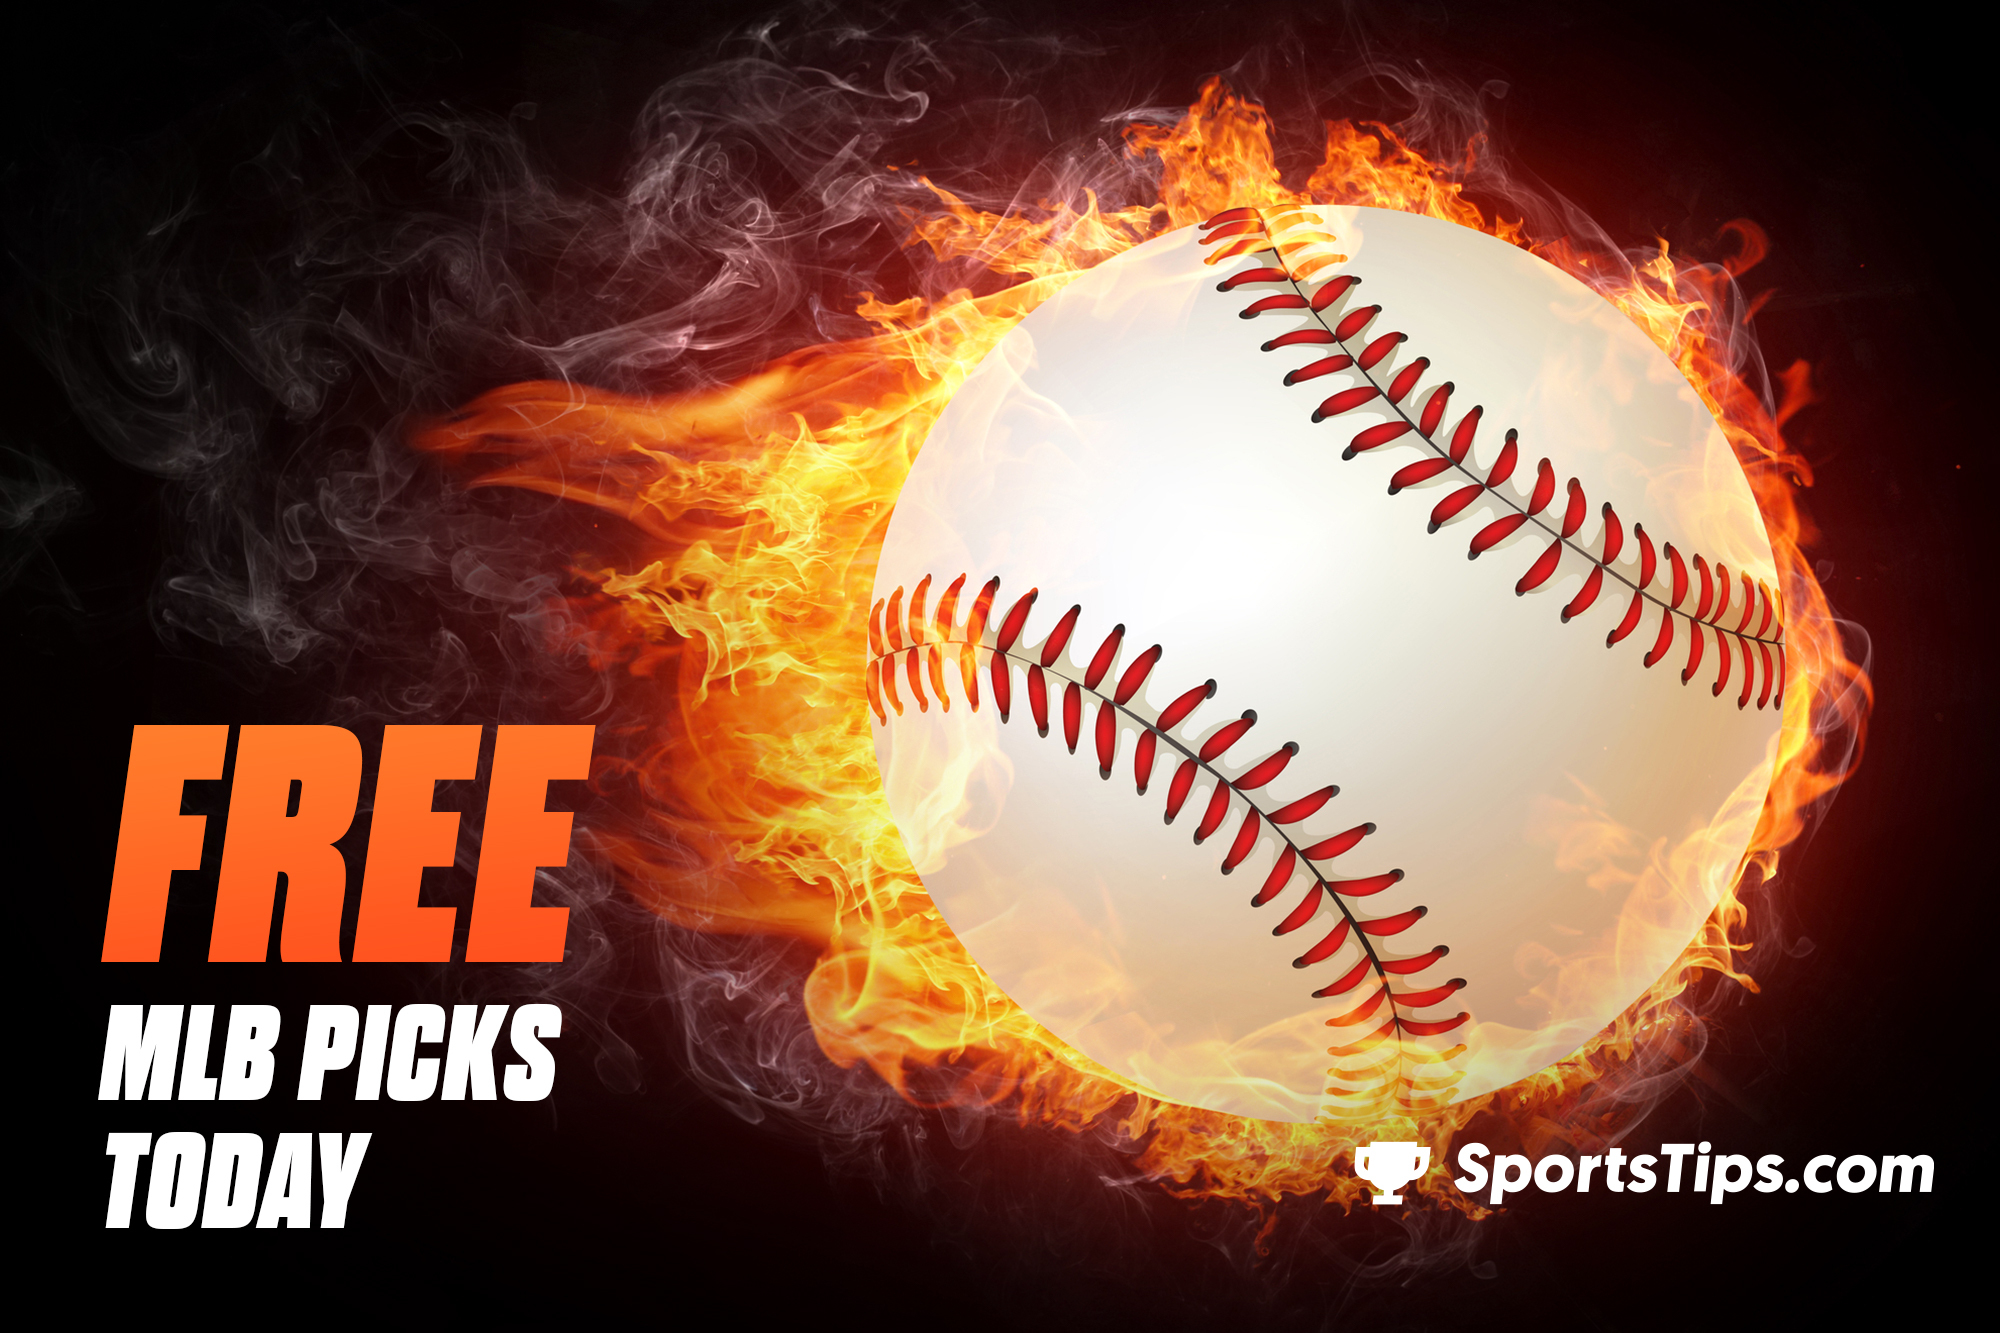 Free MLB Picks Today for Thursday, September 23rd, 2021